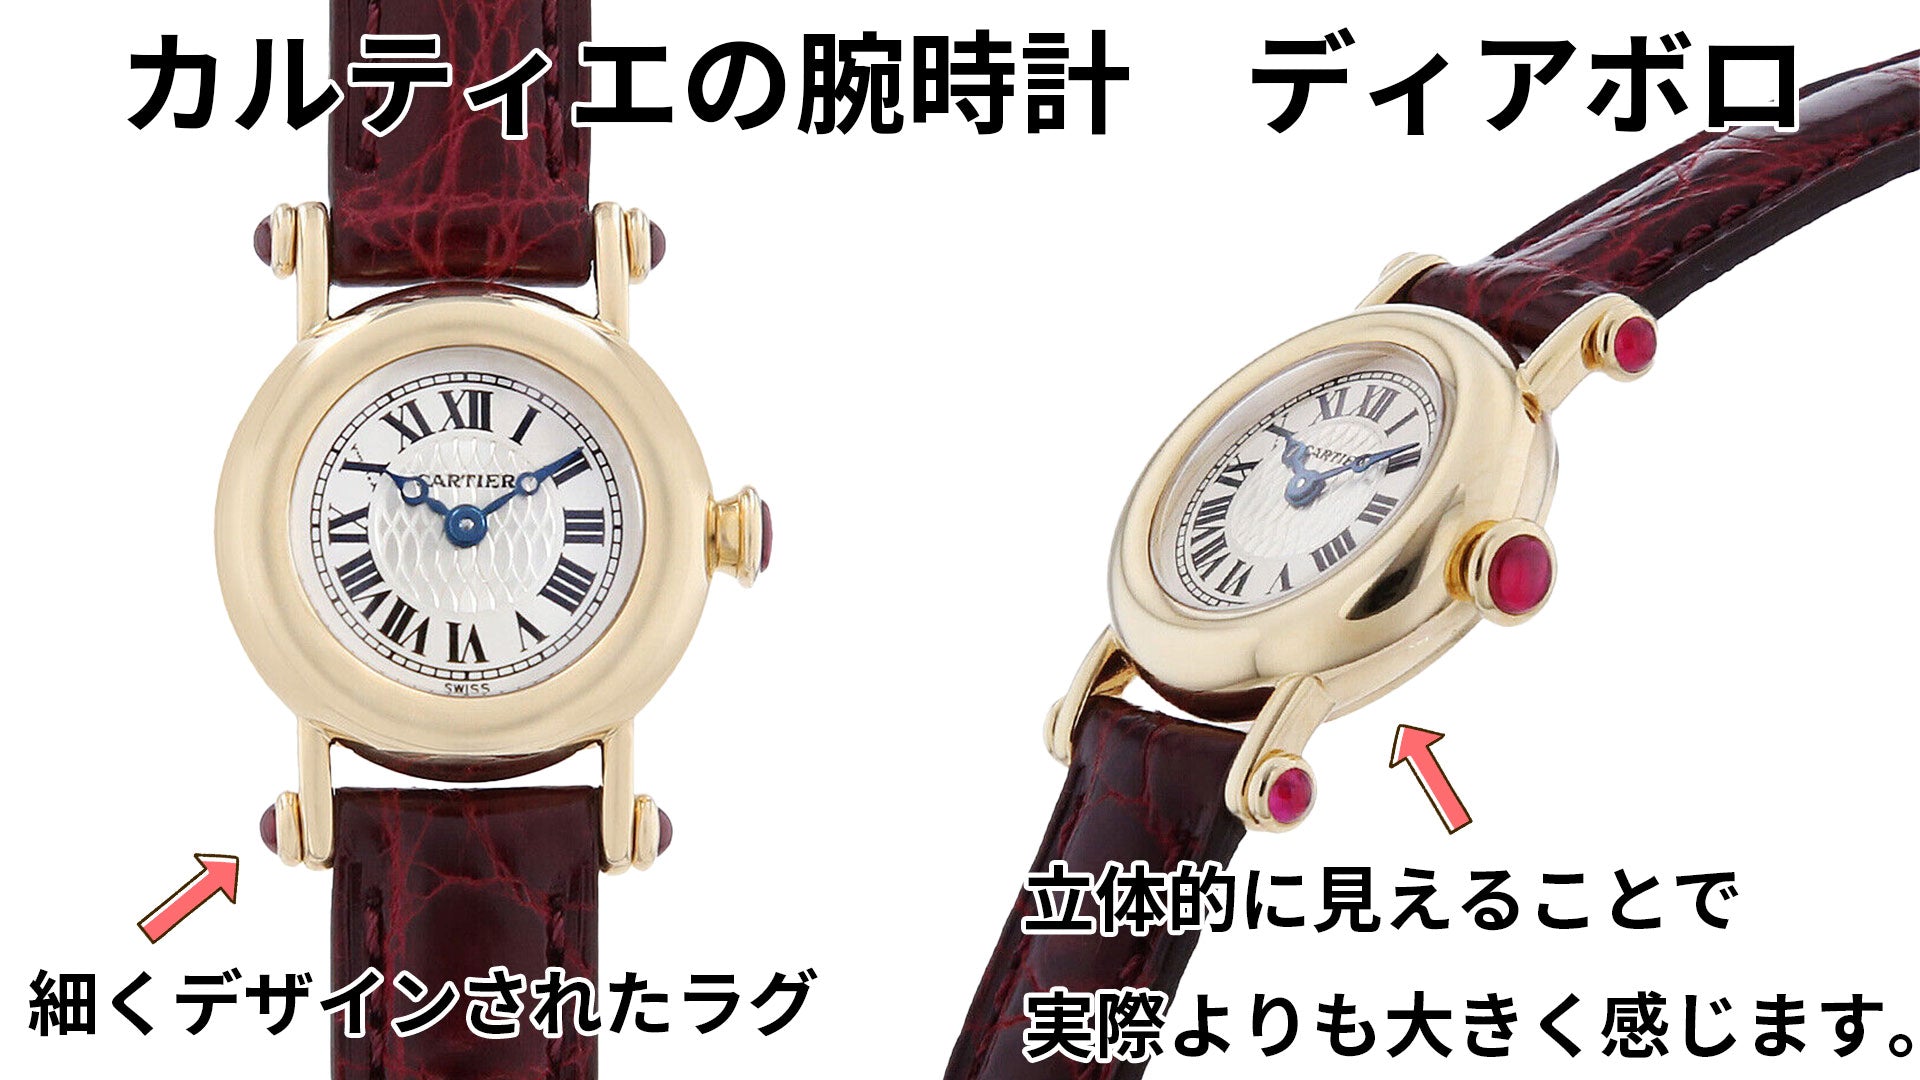 Cartier Diabolo watch design details